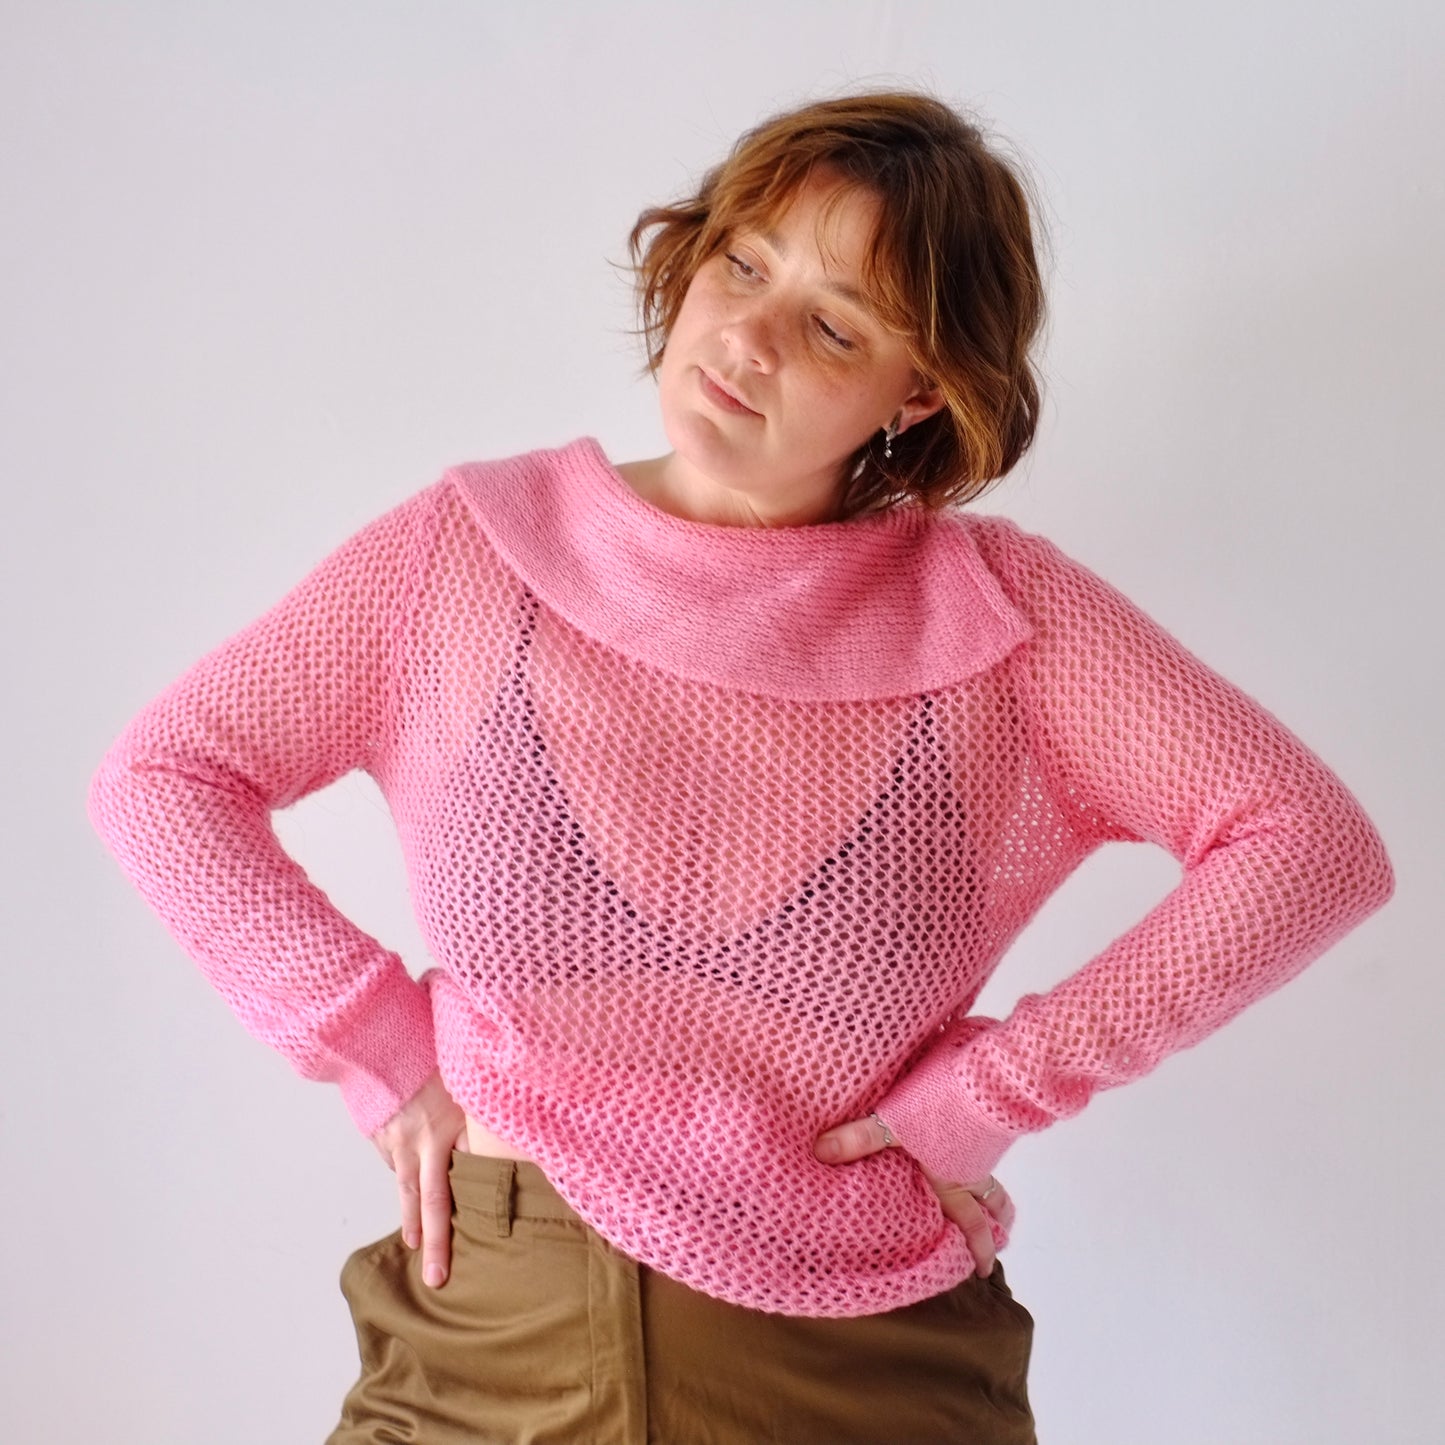 Azalea Pink Sweater